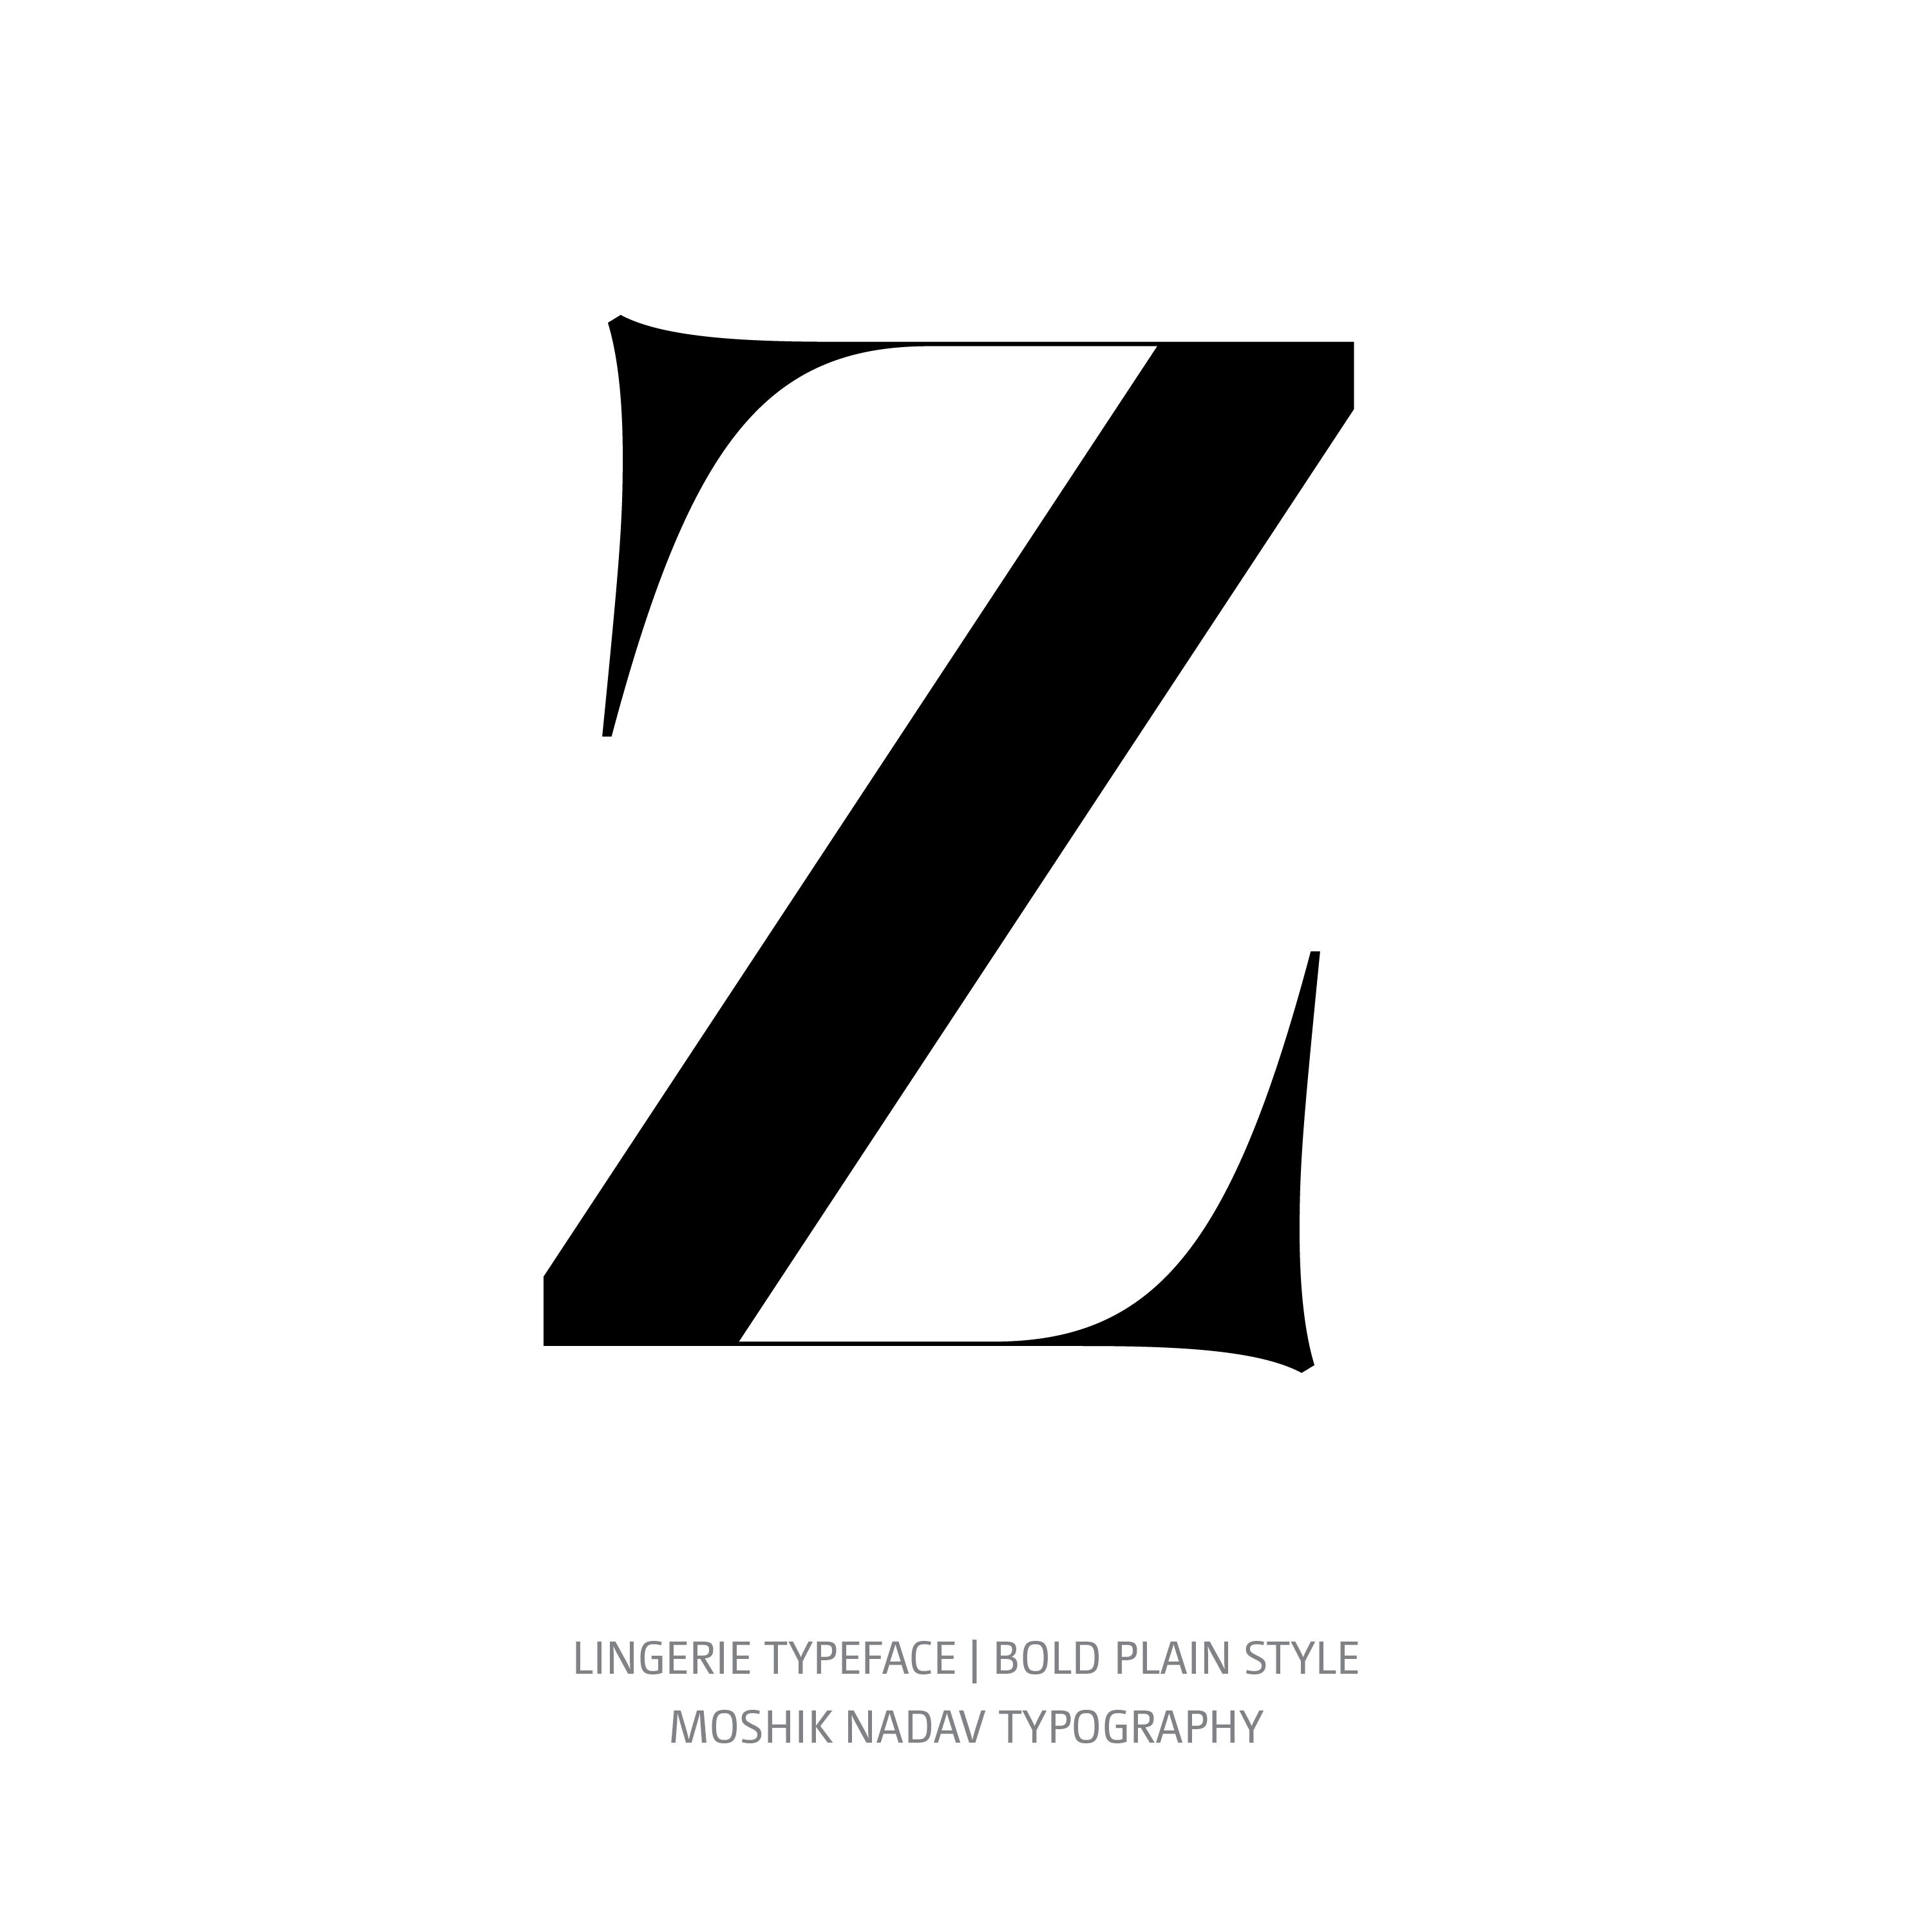 Lingerie Typeface Bold Plain Z